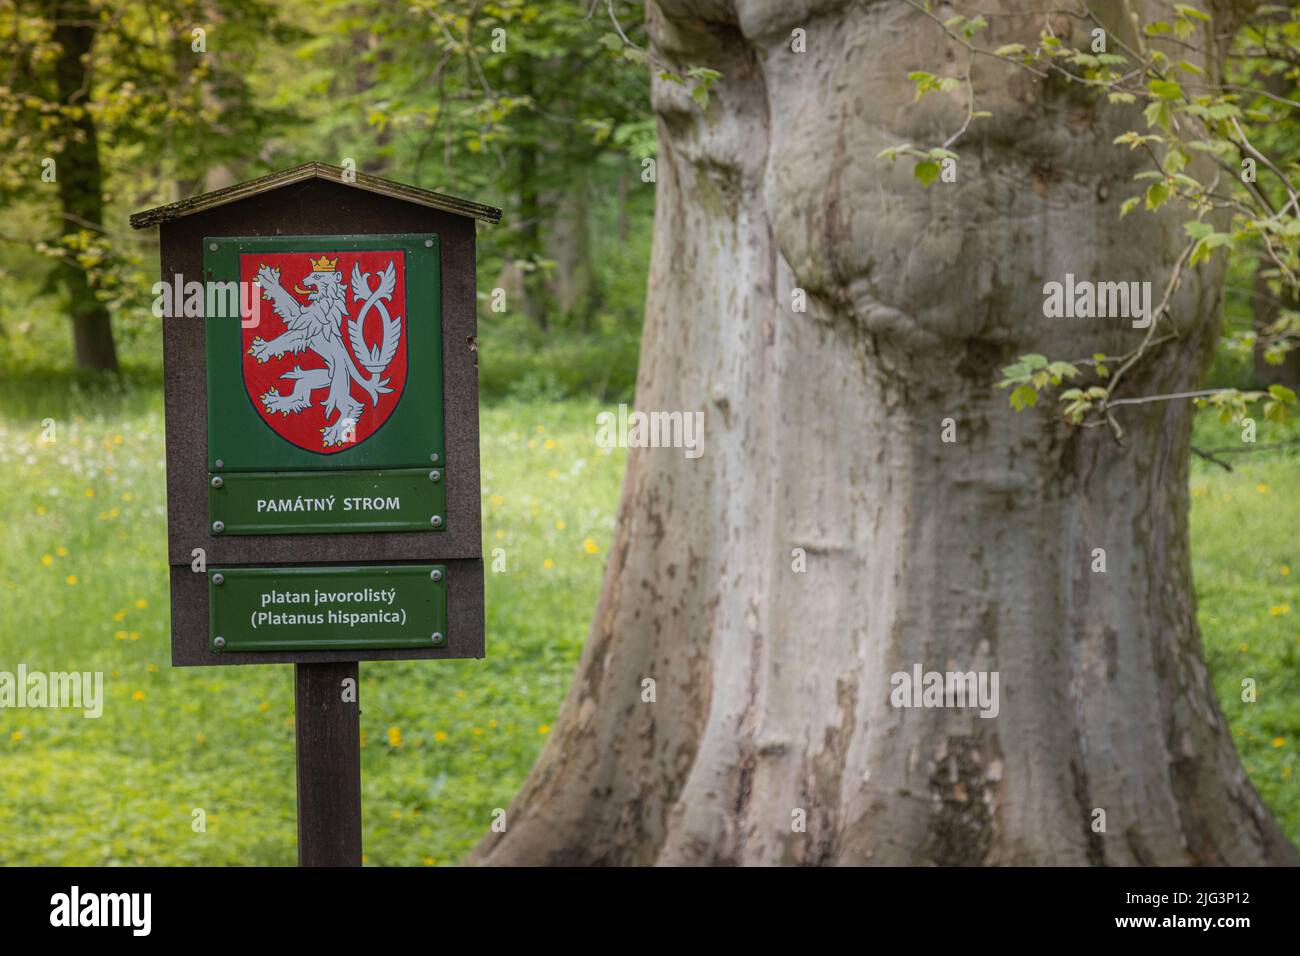 Segno per albero protetto Platanus hispanica, in Veltrusy, Repubblica Ceca, 15 maggio 2021. (Foto CTK/Martin Macak Gregor) Foto Stock